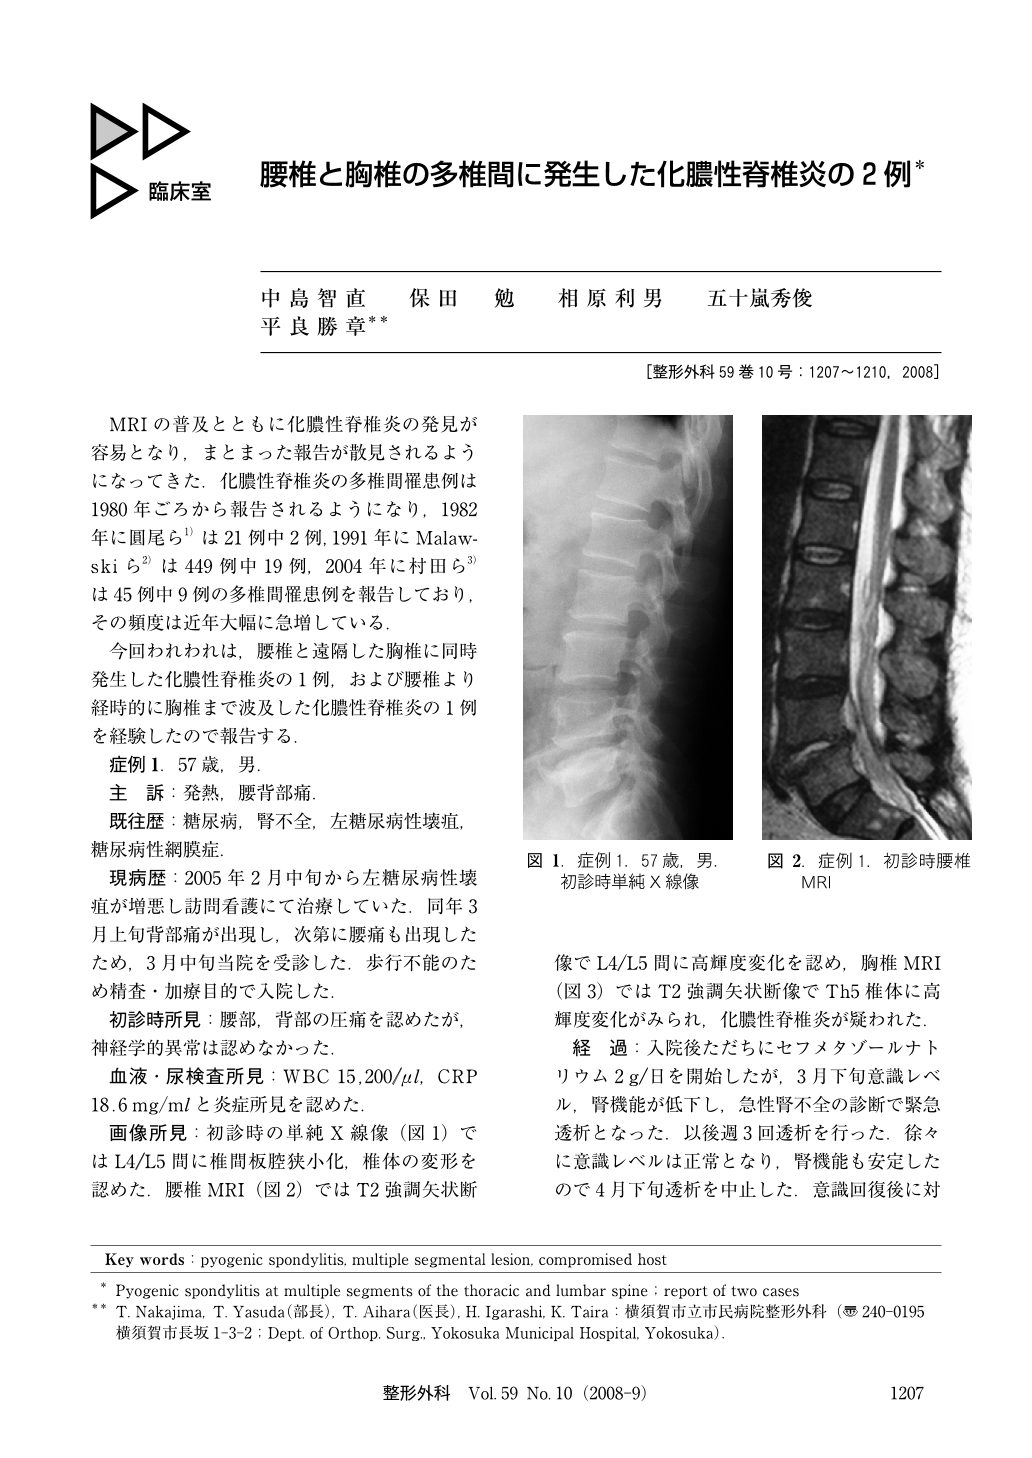 腰椎と胸椎の多椎間に発生した化膿性脊椎炎の2例 (臨床雑誌整形外科 59 